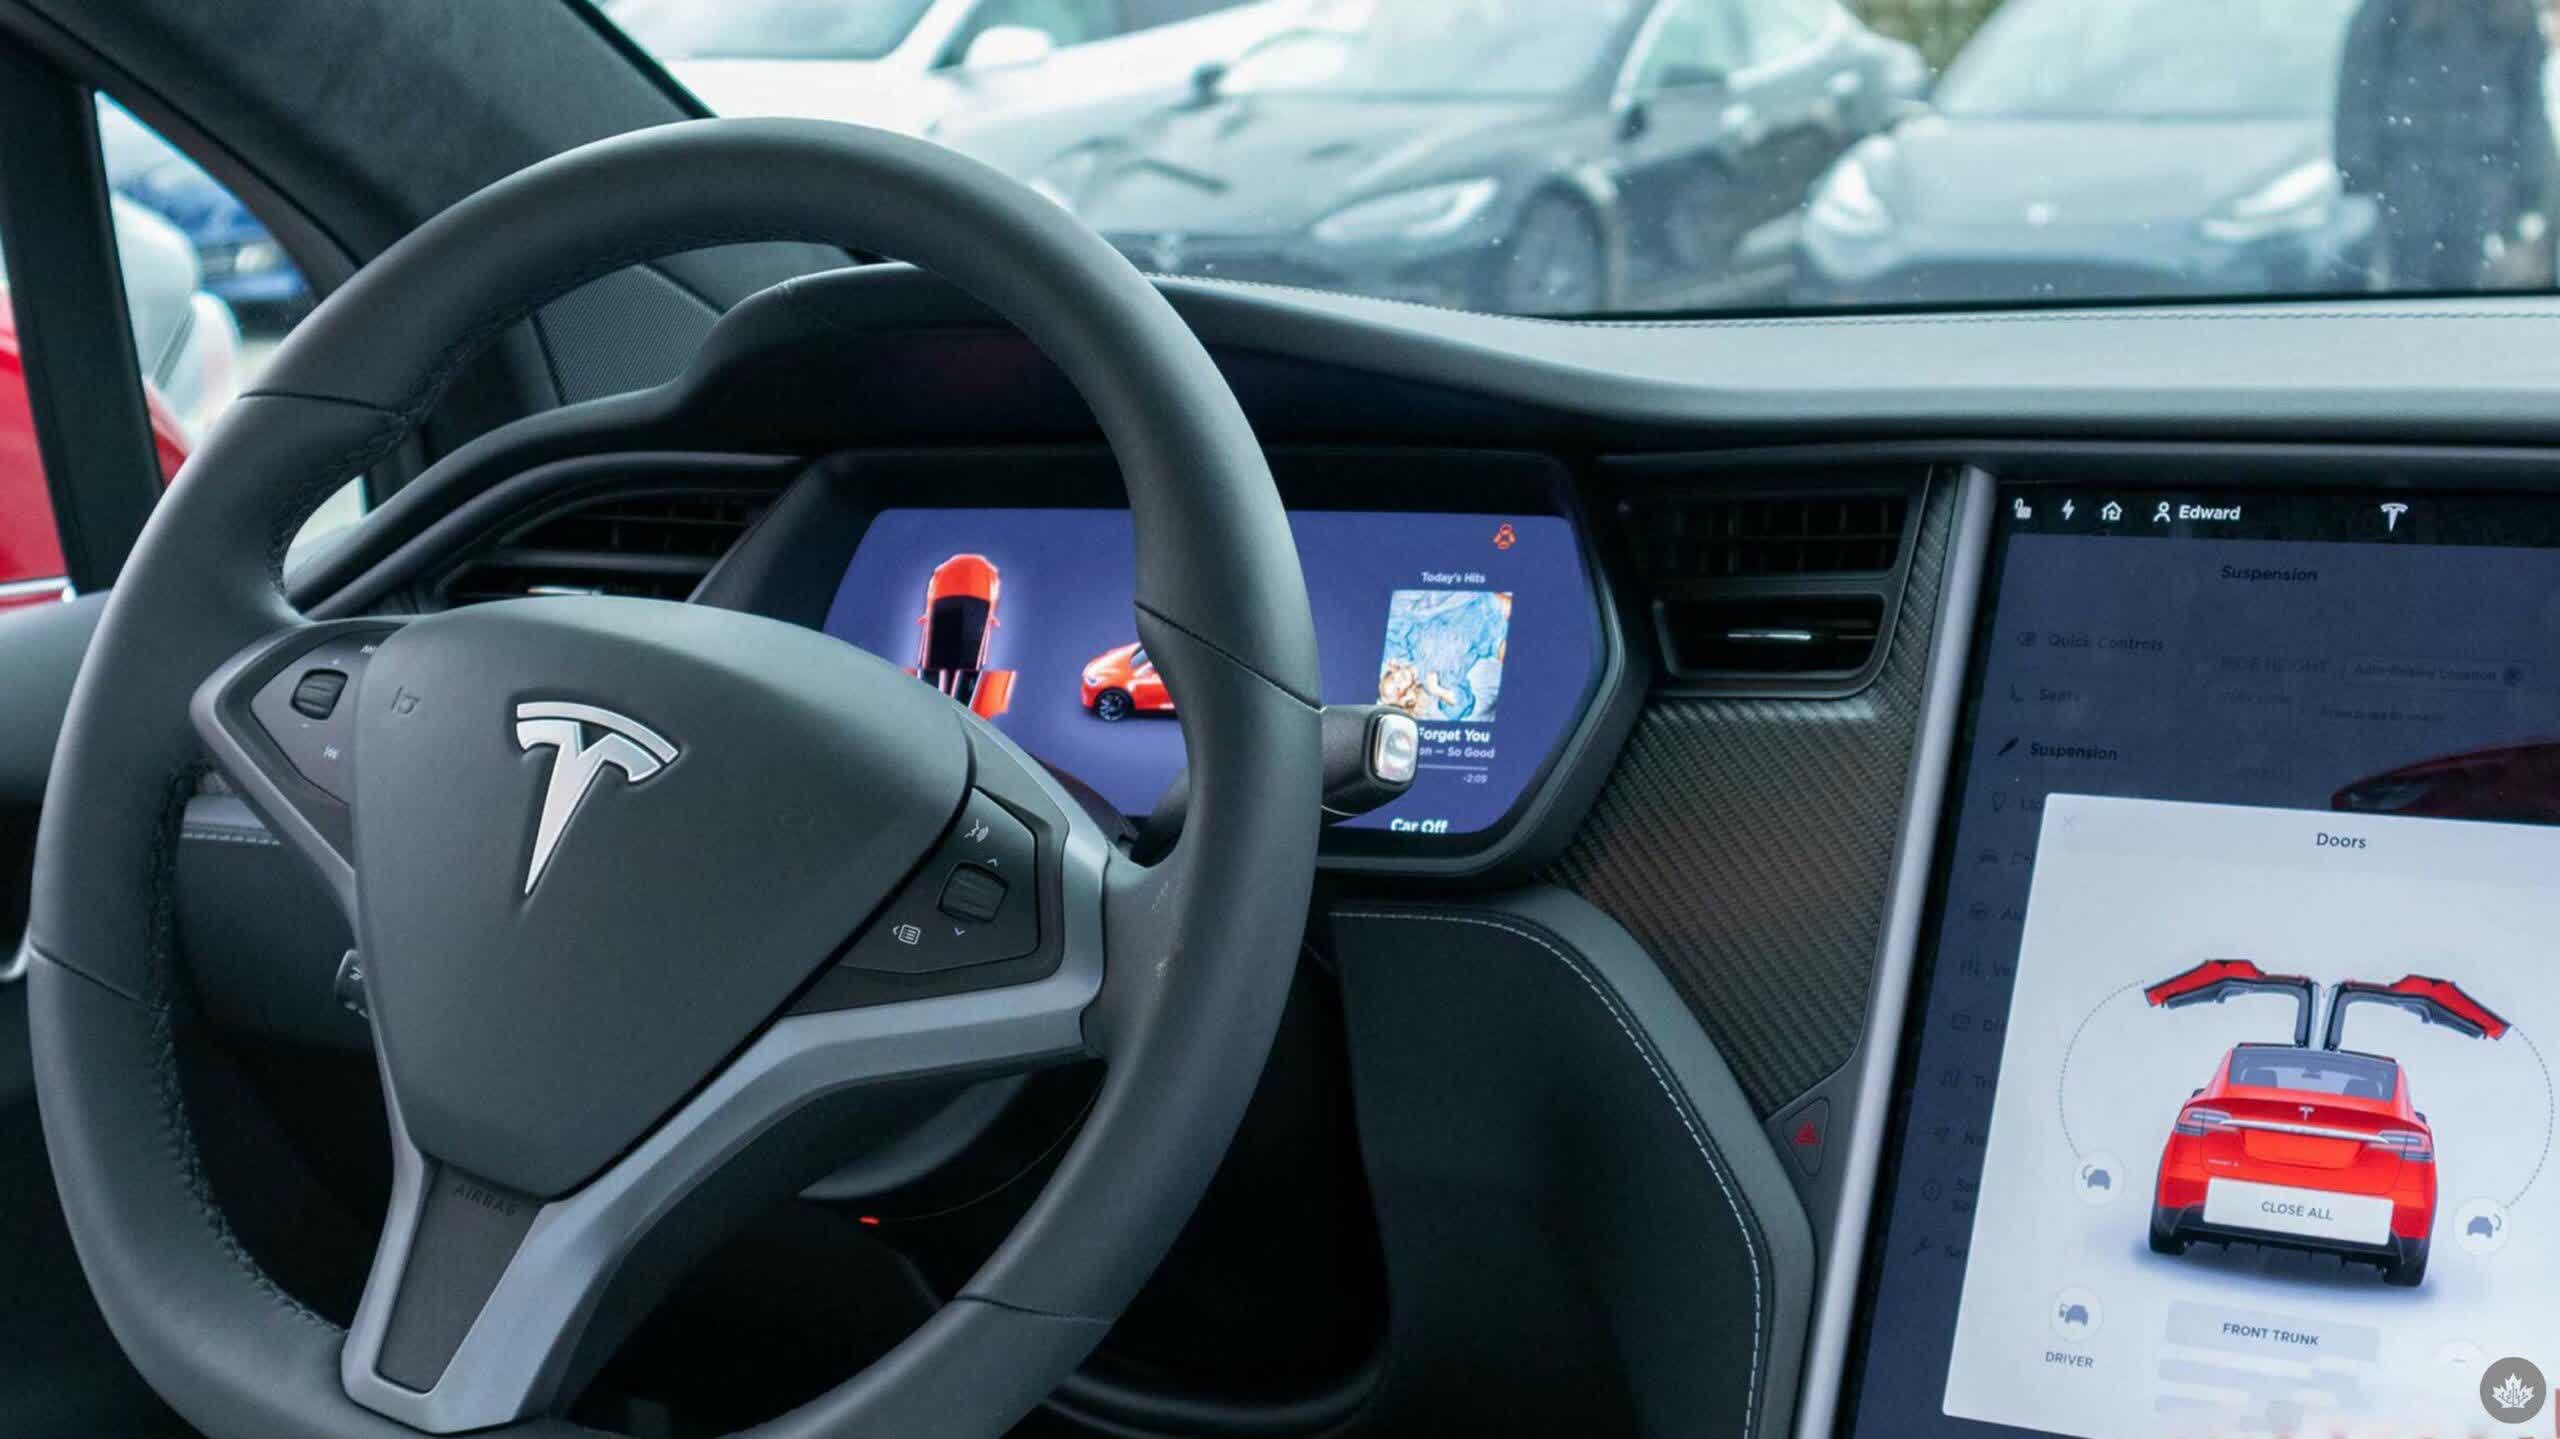 Tesla ofrece un mes gratuito de conducción totalmente autónoma, Musk exige el requisito de demostración para las entregas